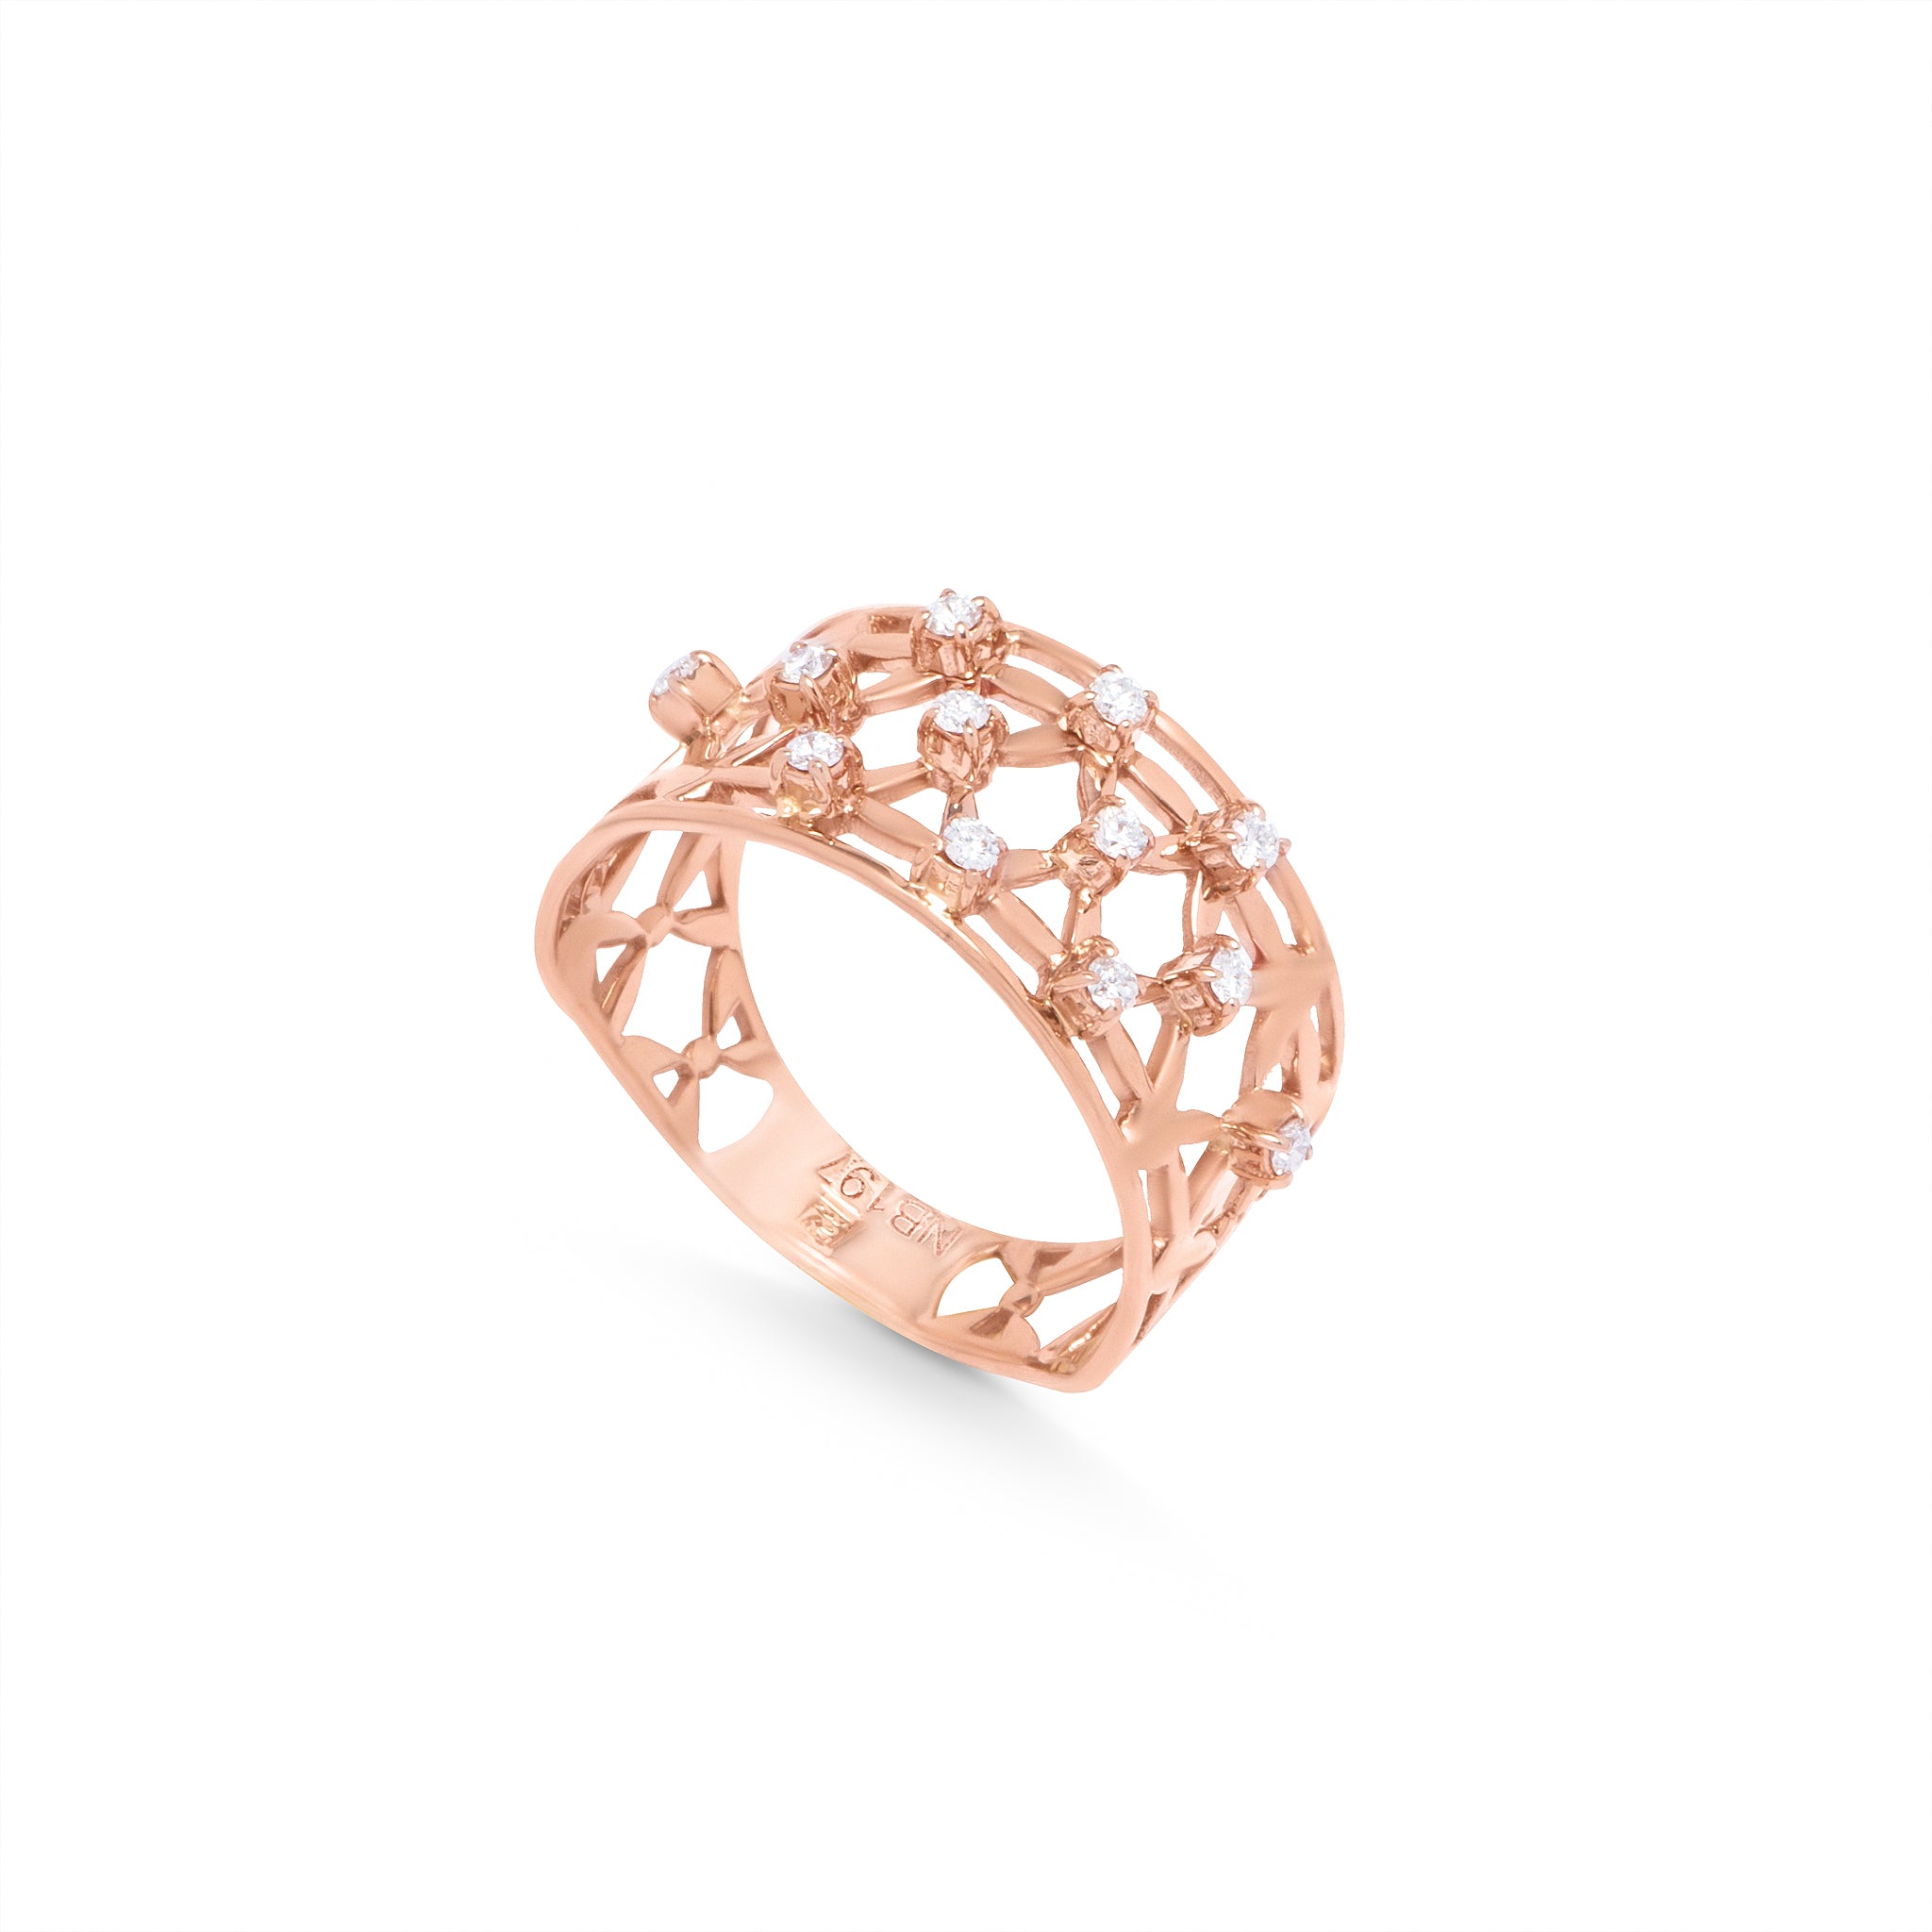 Geometrical Diamond Ring in 18k Rose Gold - SIR1452